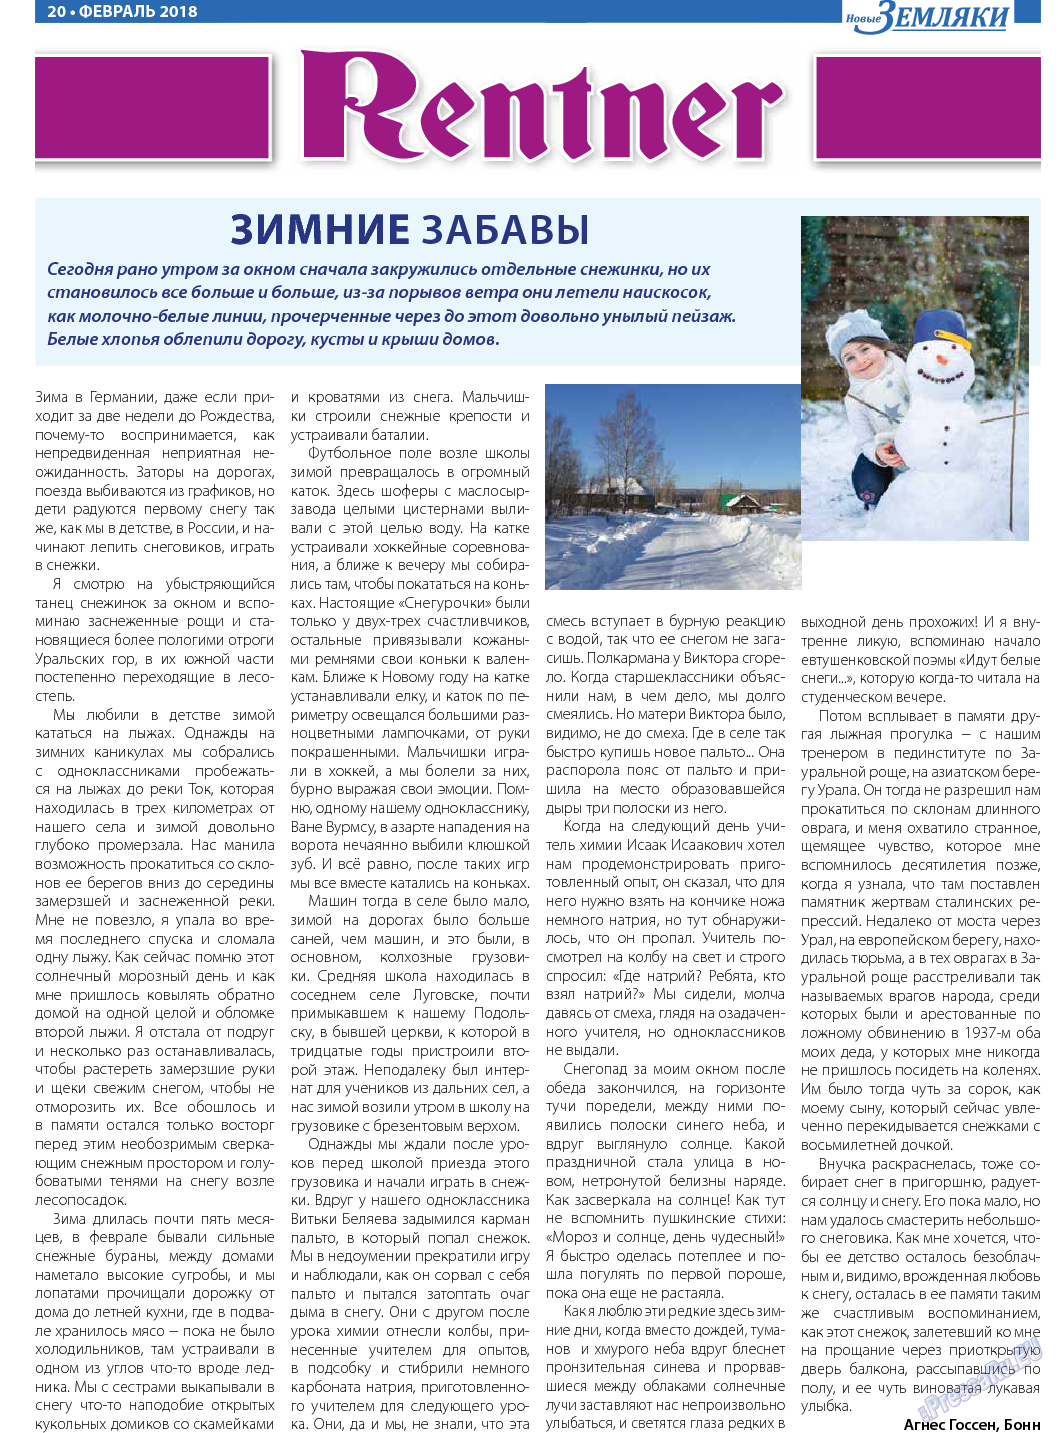 Новые Земляки, газета. 2018 №2 стр.20